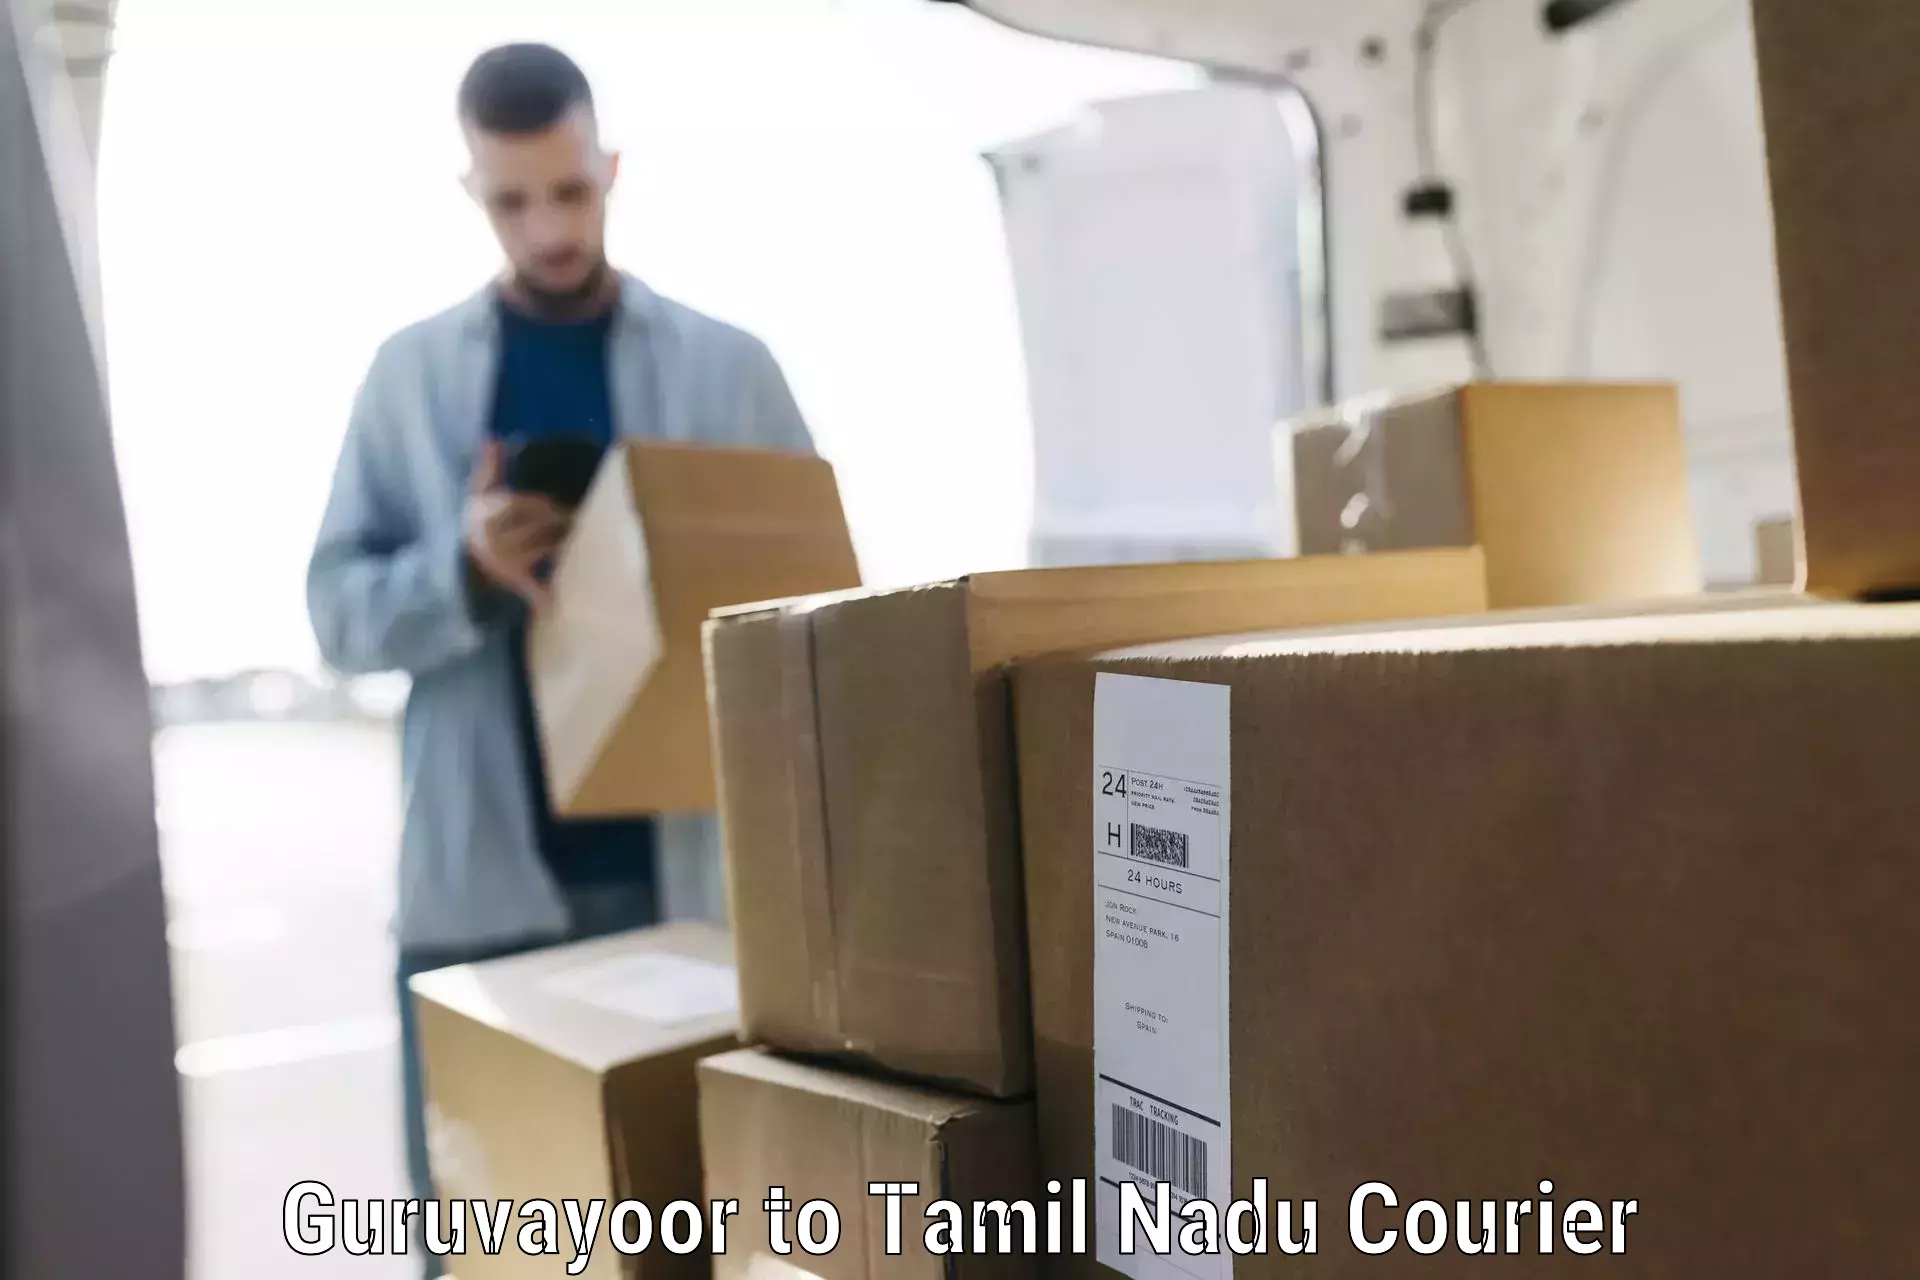 Luggage delivery app Guruvayoor to Tamil Nadu